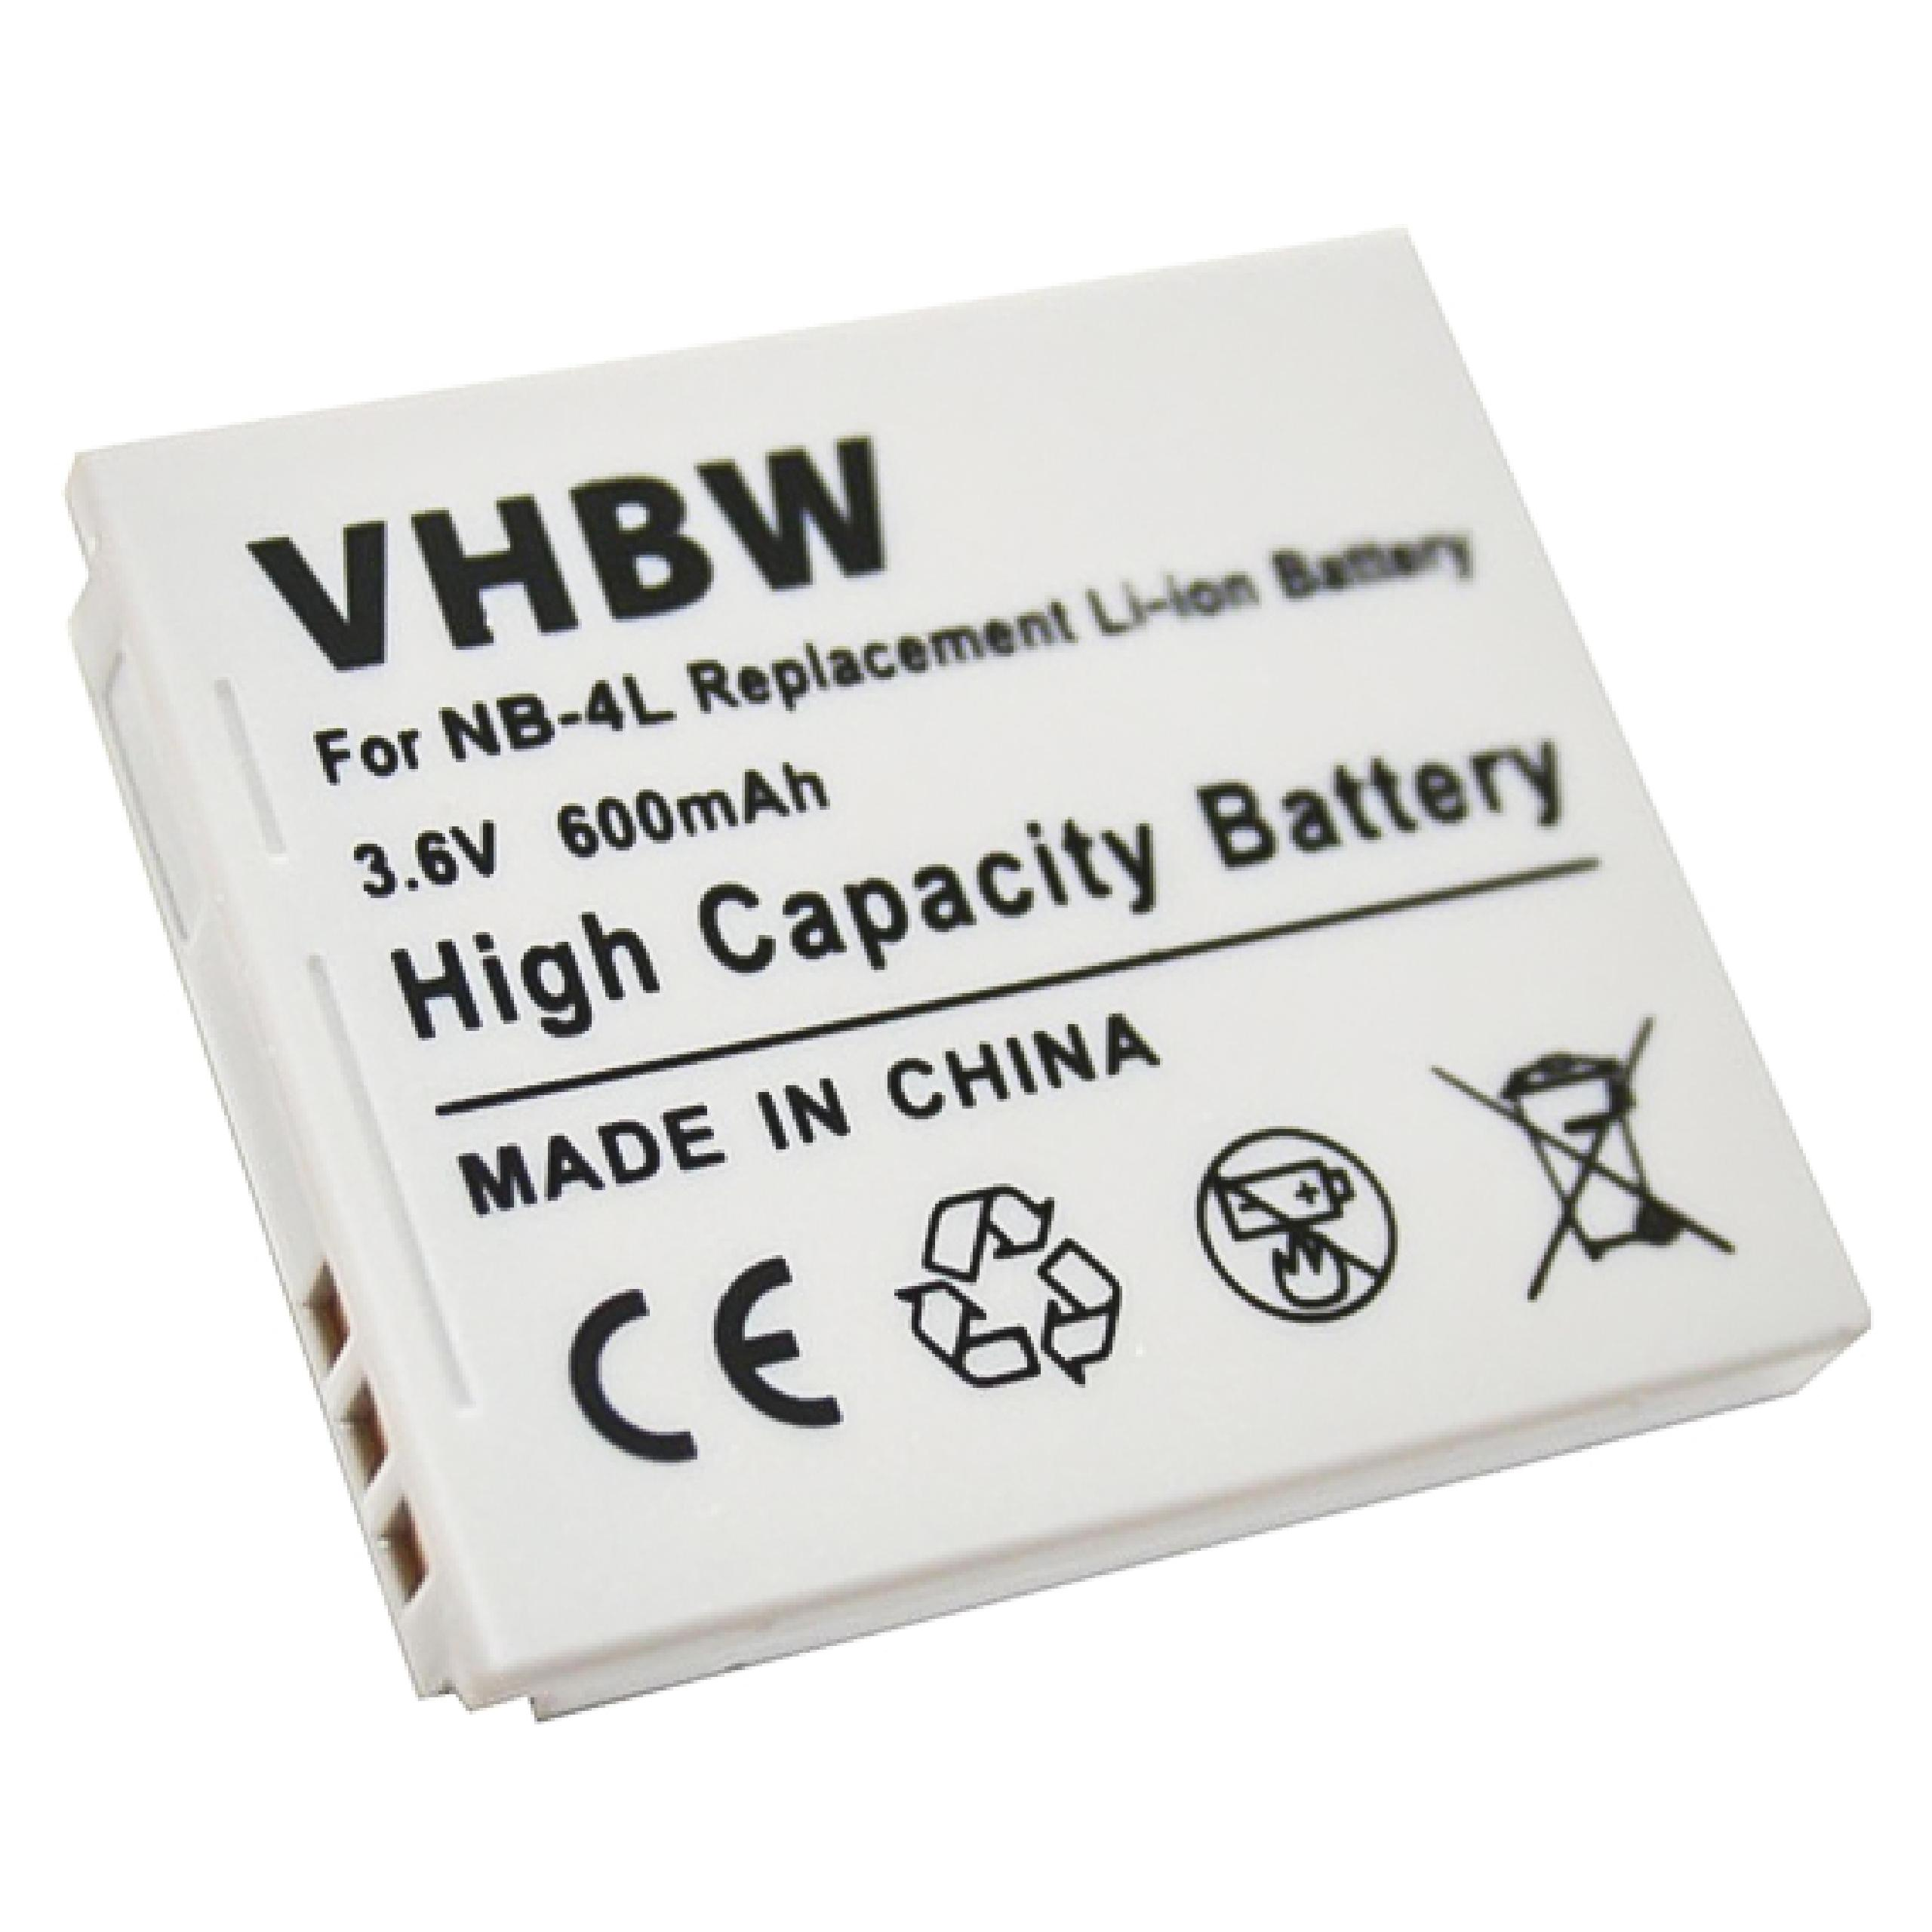 VHBW kompatibel mit is, 55, 600 82, 65, mAh 60, Zoom, 50, 70, Ixus Wireless 75, Akku, i Volt, Canon Li-Ion Digital 3.6 i7, 80